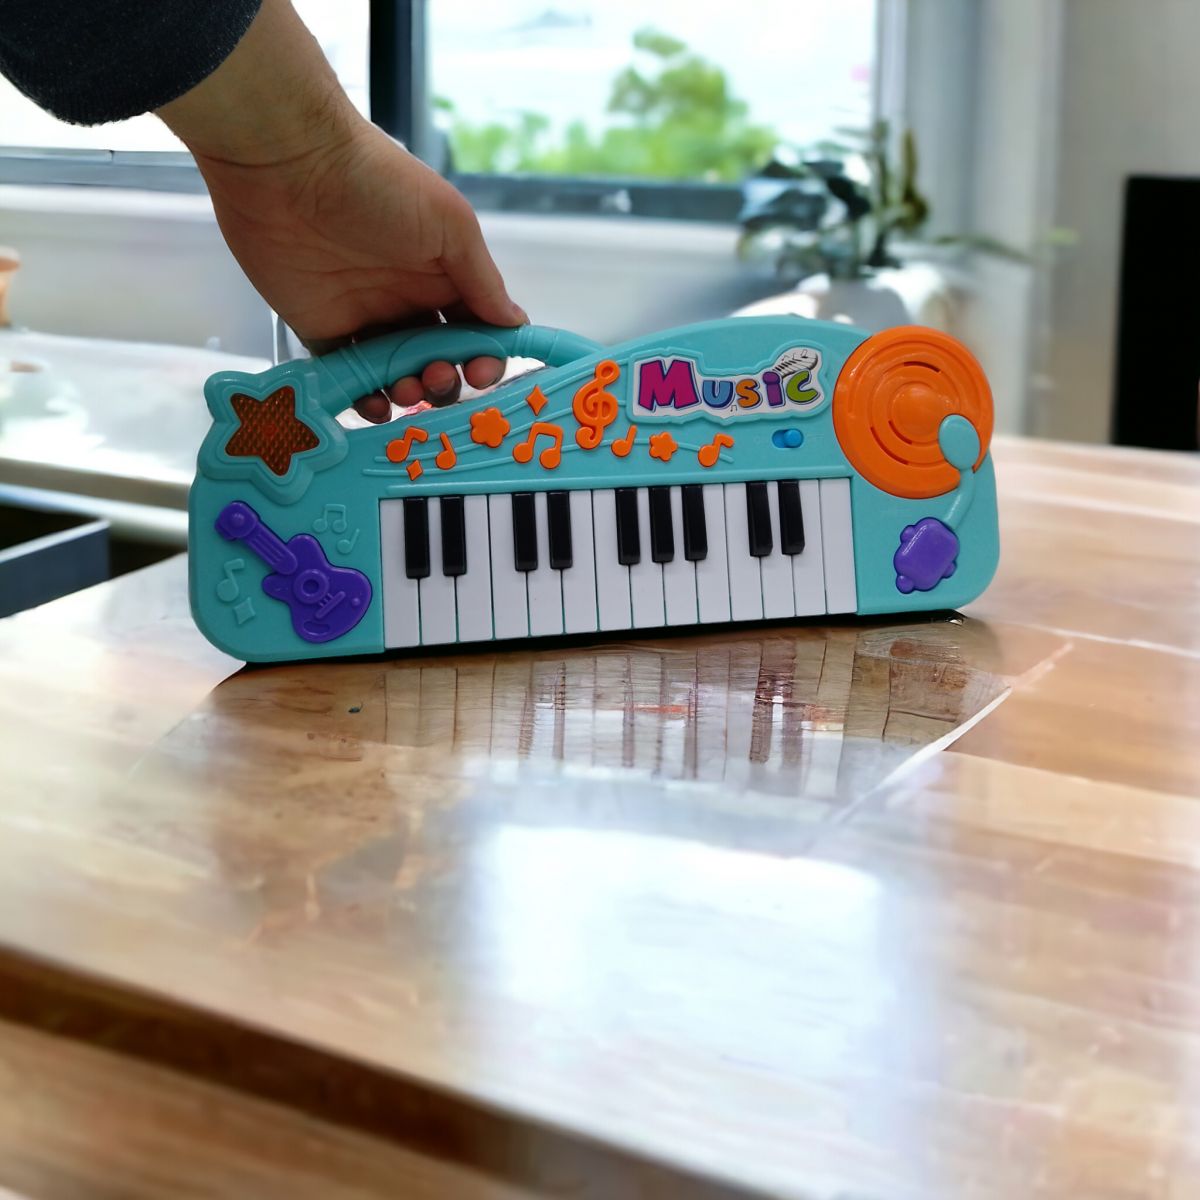 Дитяче піаніно "Electronic Organ" (бузковий)